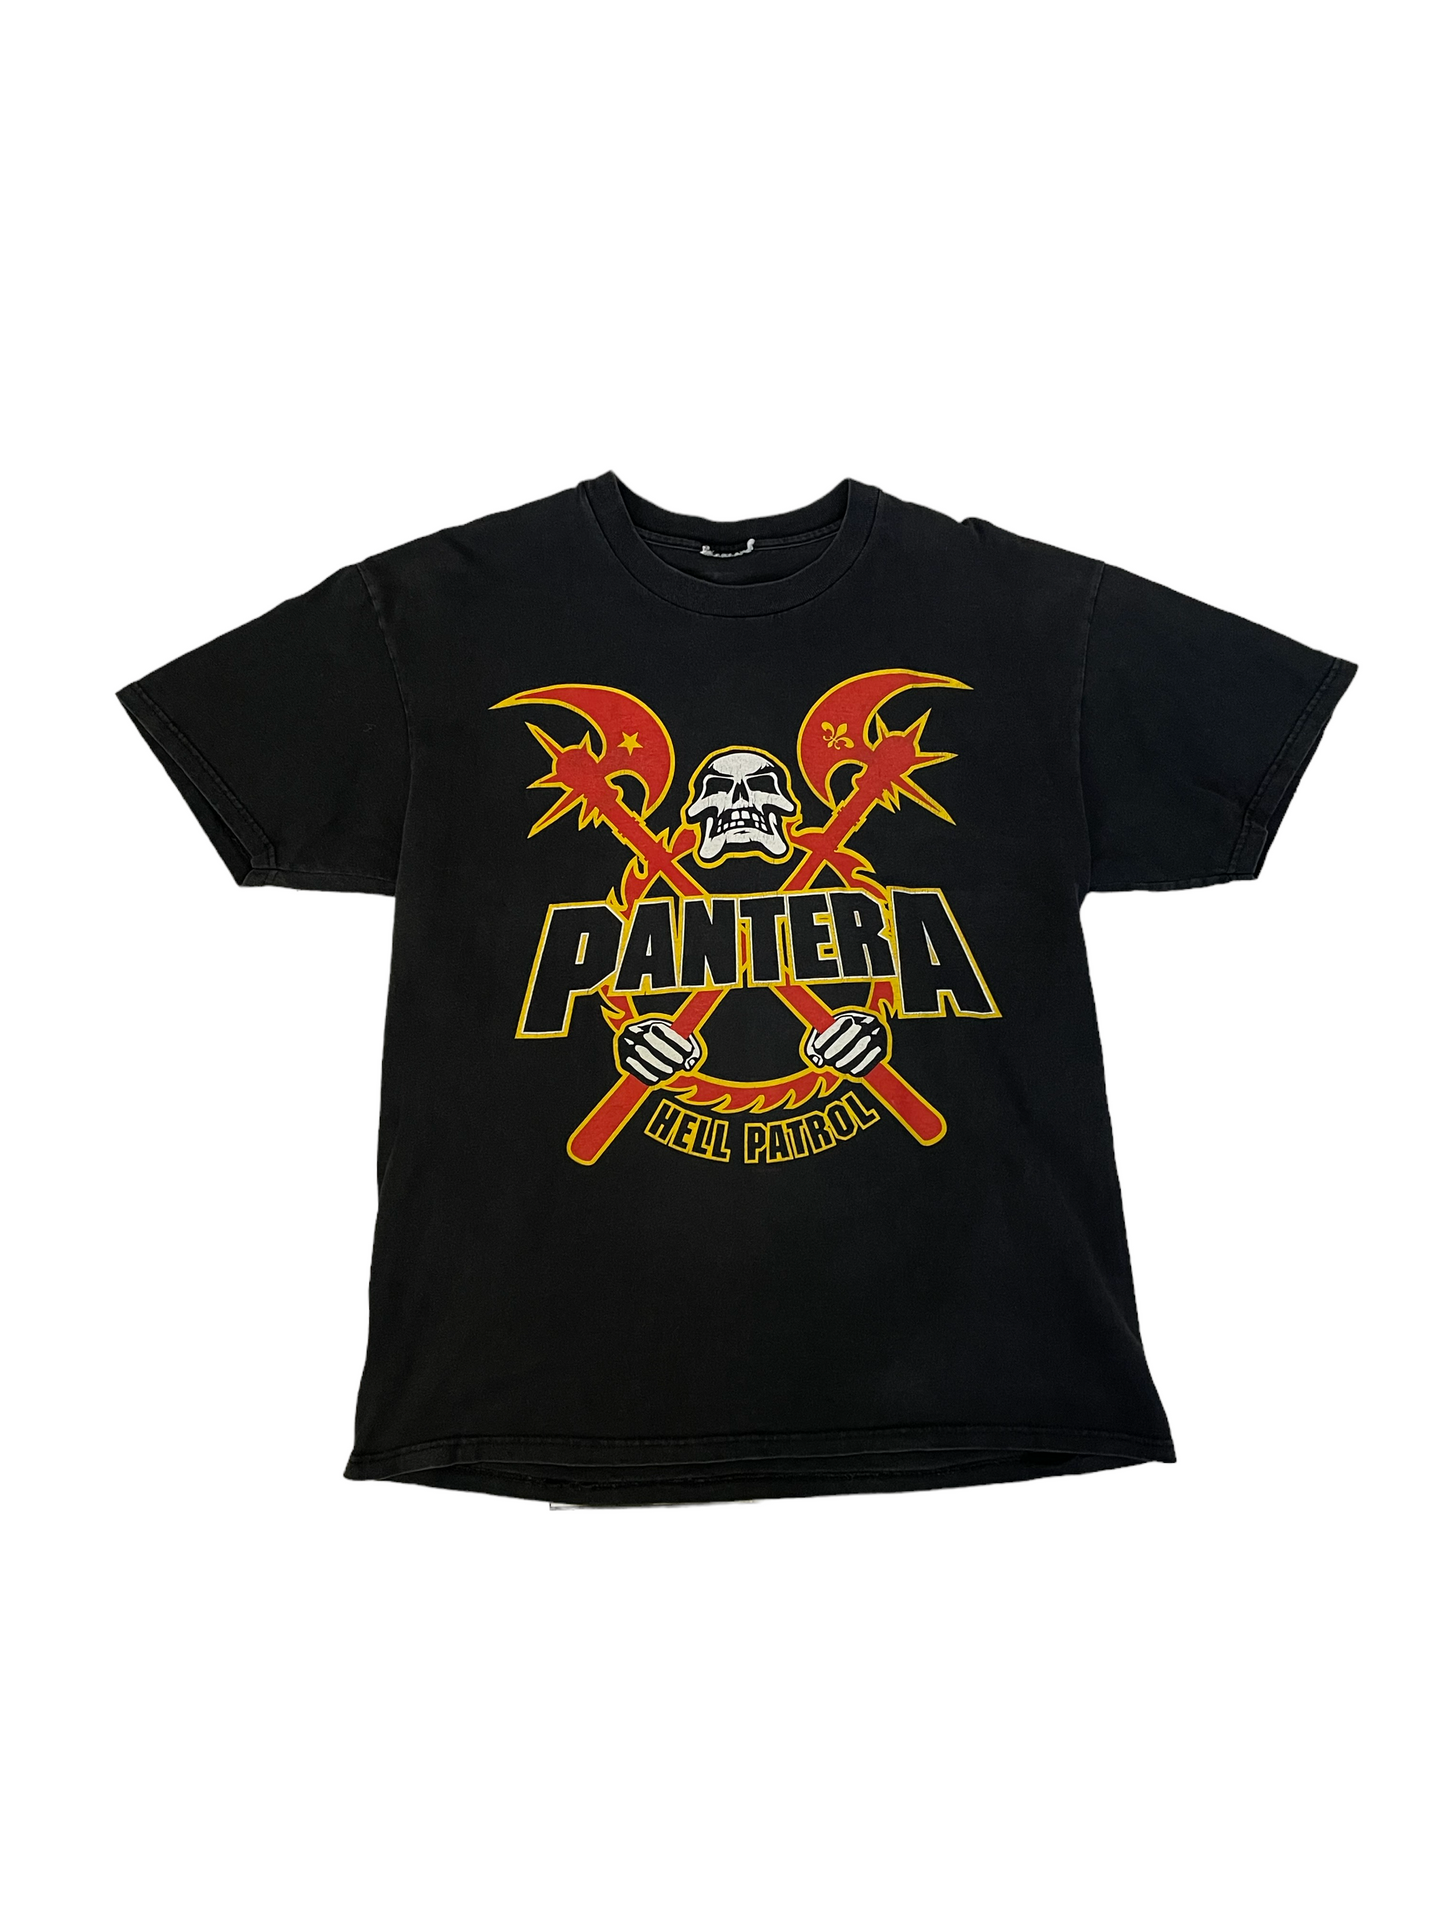 98’ Pantera Large